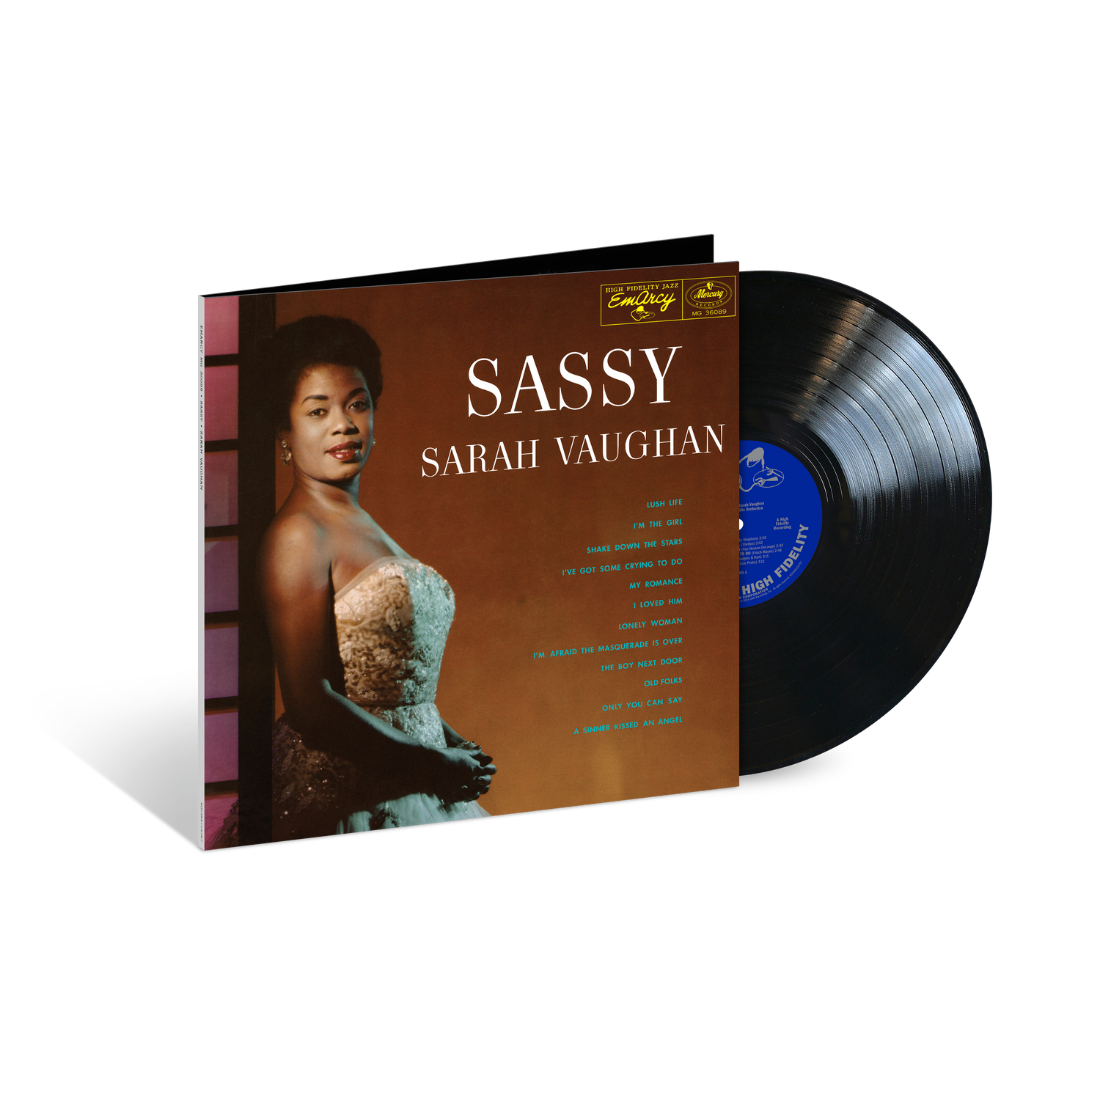 Sarah Vaughan - Sassy (Acoustic Sounds): Vinyl LP